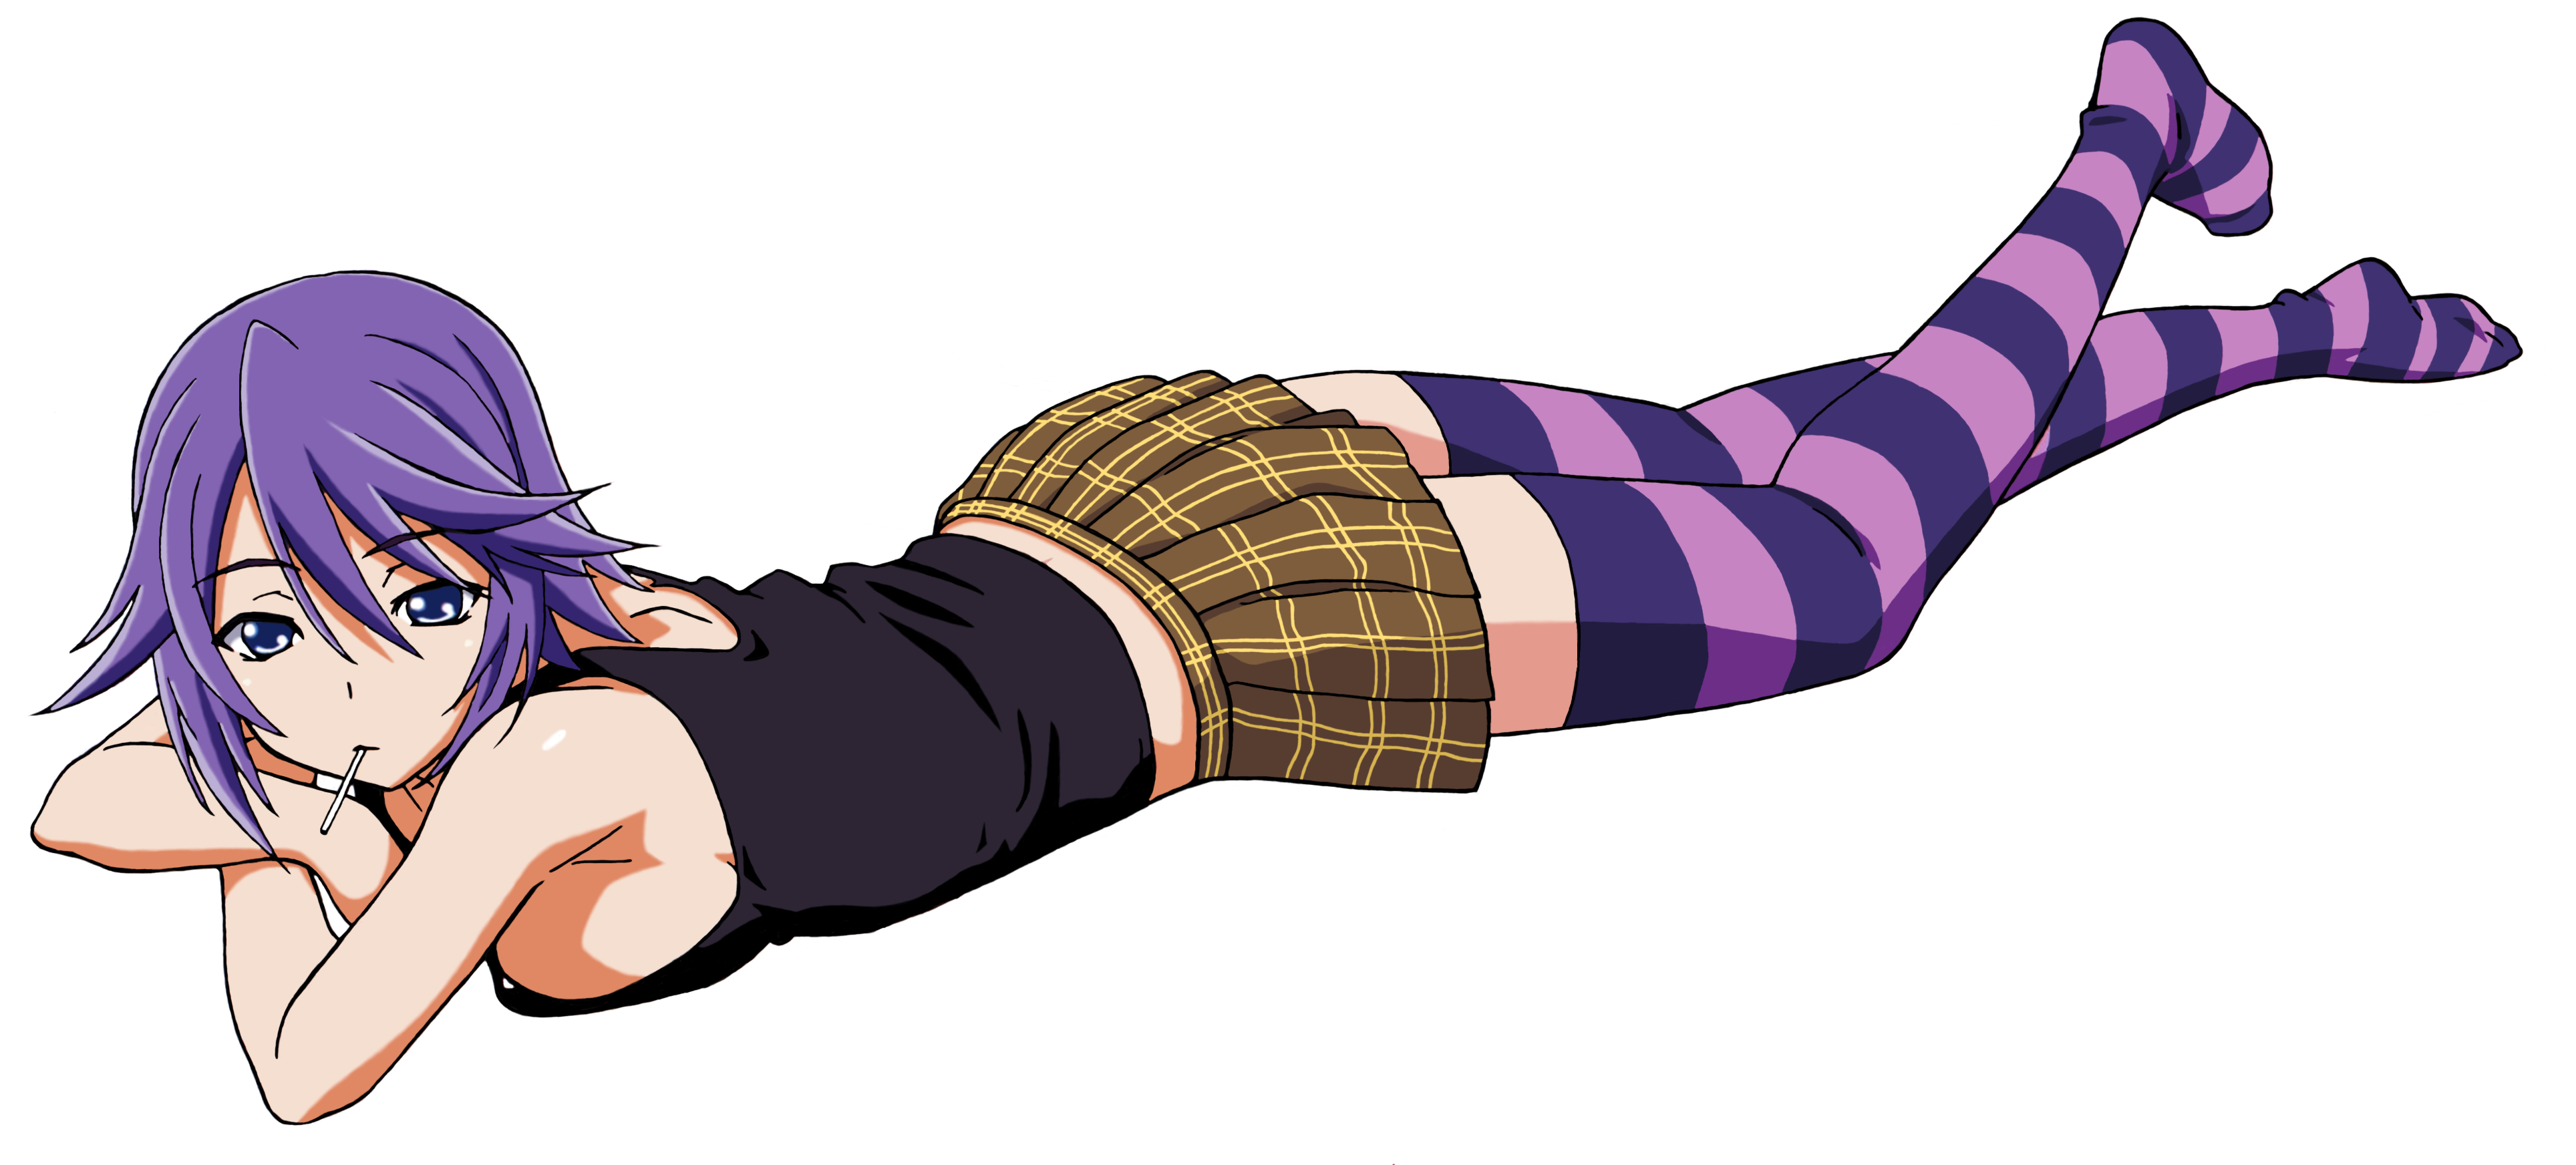 Anime 3856x1744 vector purple skirt thigh-highs Rosario + Vampire Shirayuki Mizore lying on front